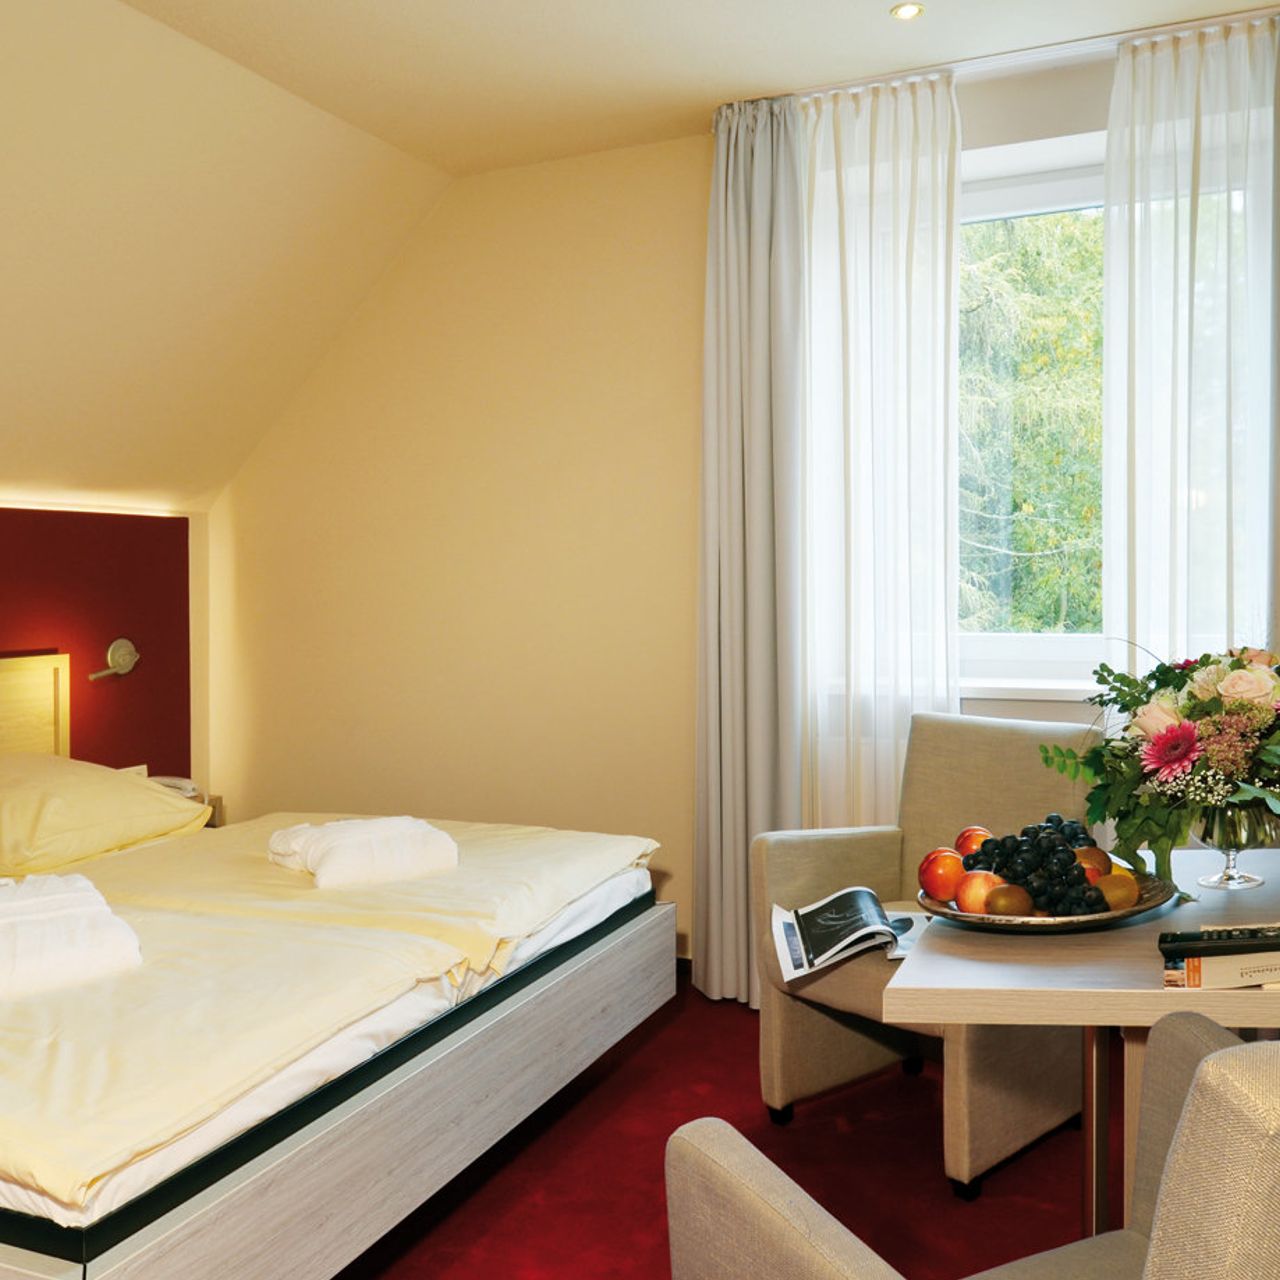 Akzent Hotel Haus Surendorff - Bramsche - Great prices at HOTEL INFO